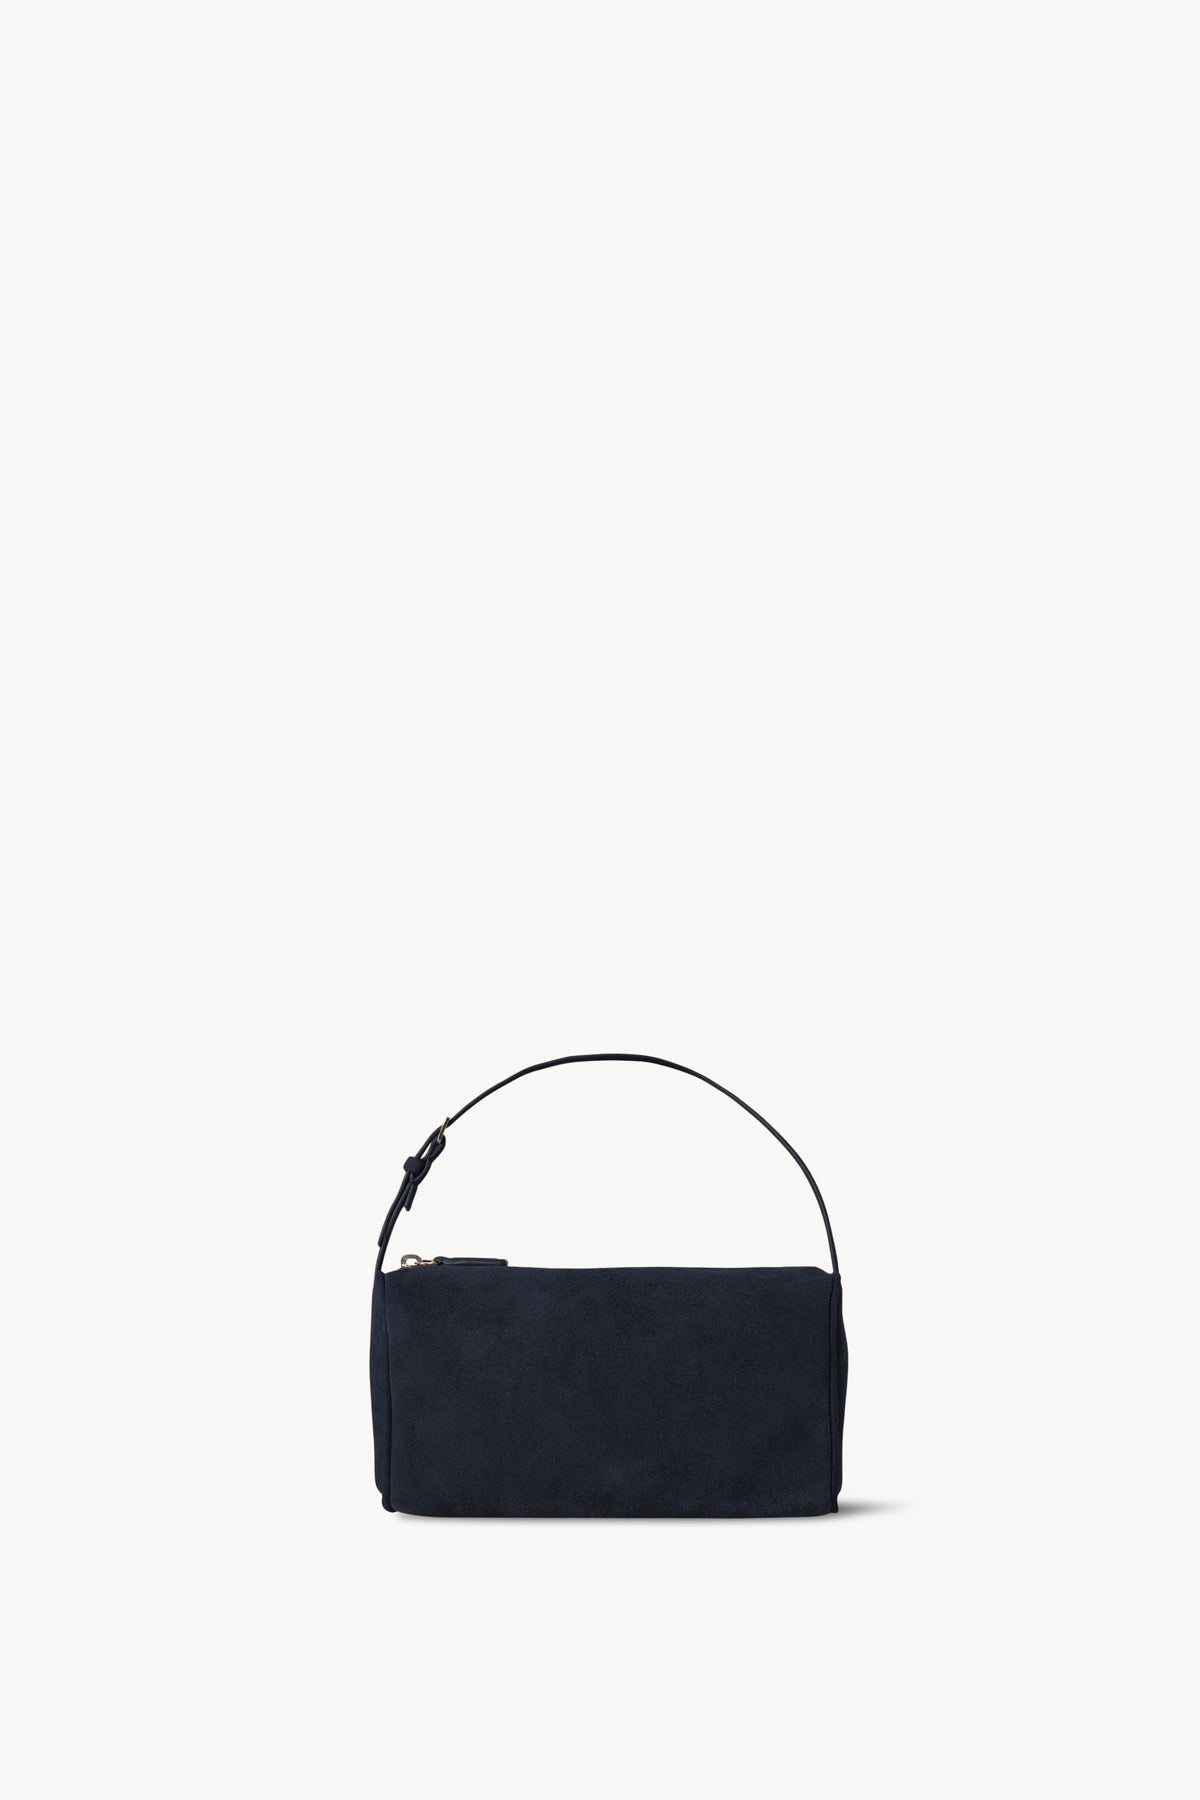 Black Piping Shoulder Bag